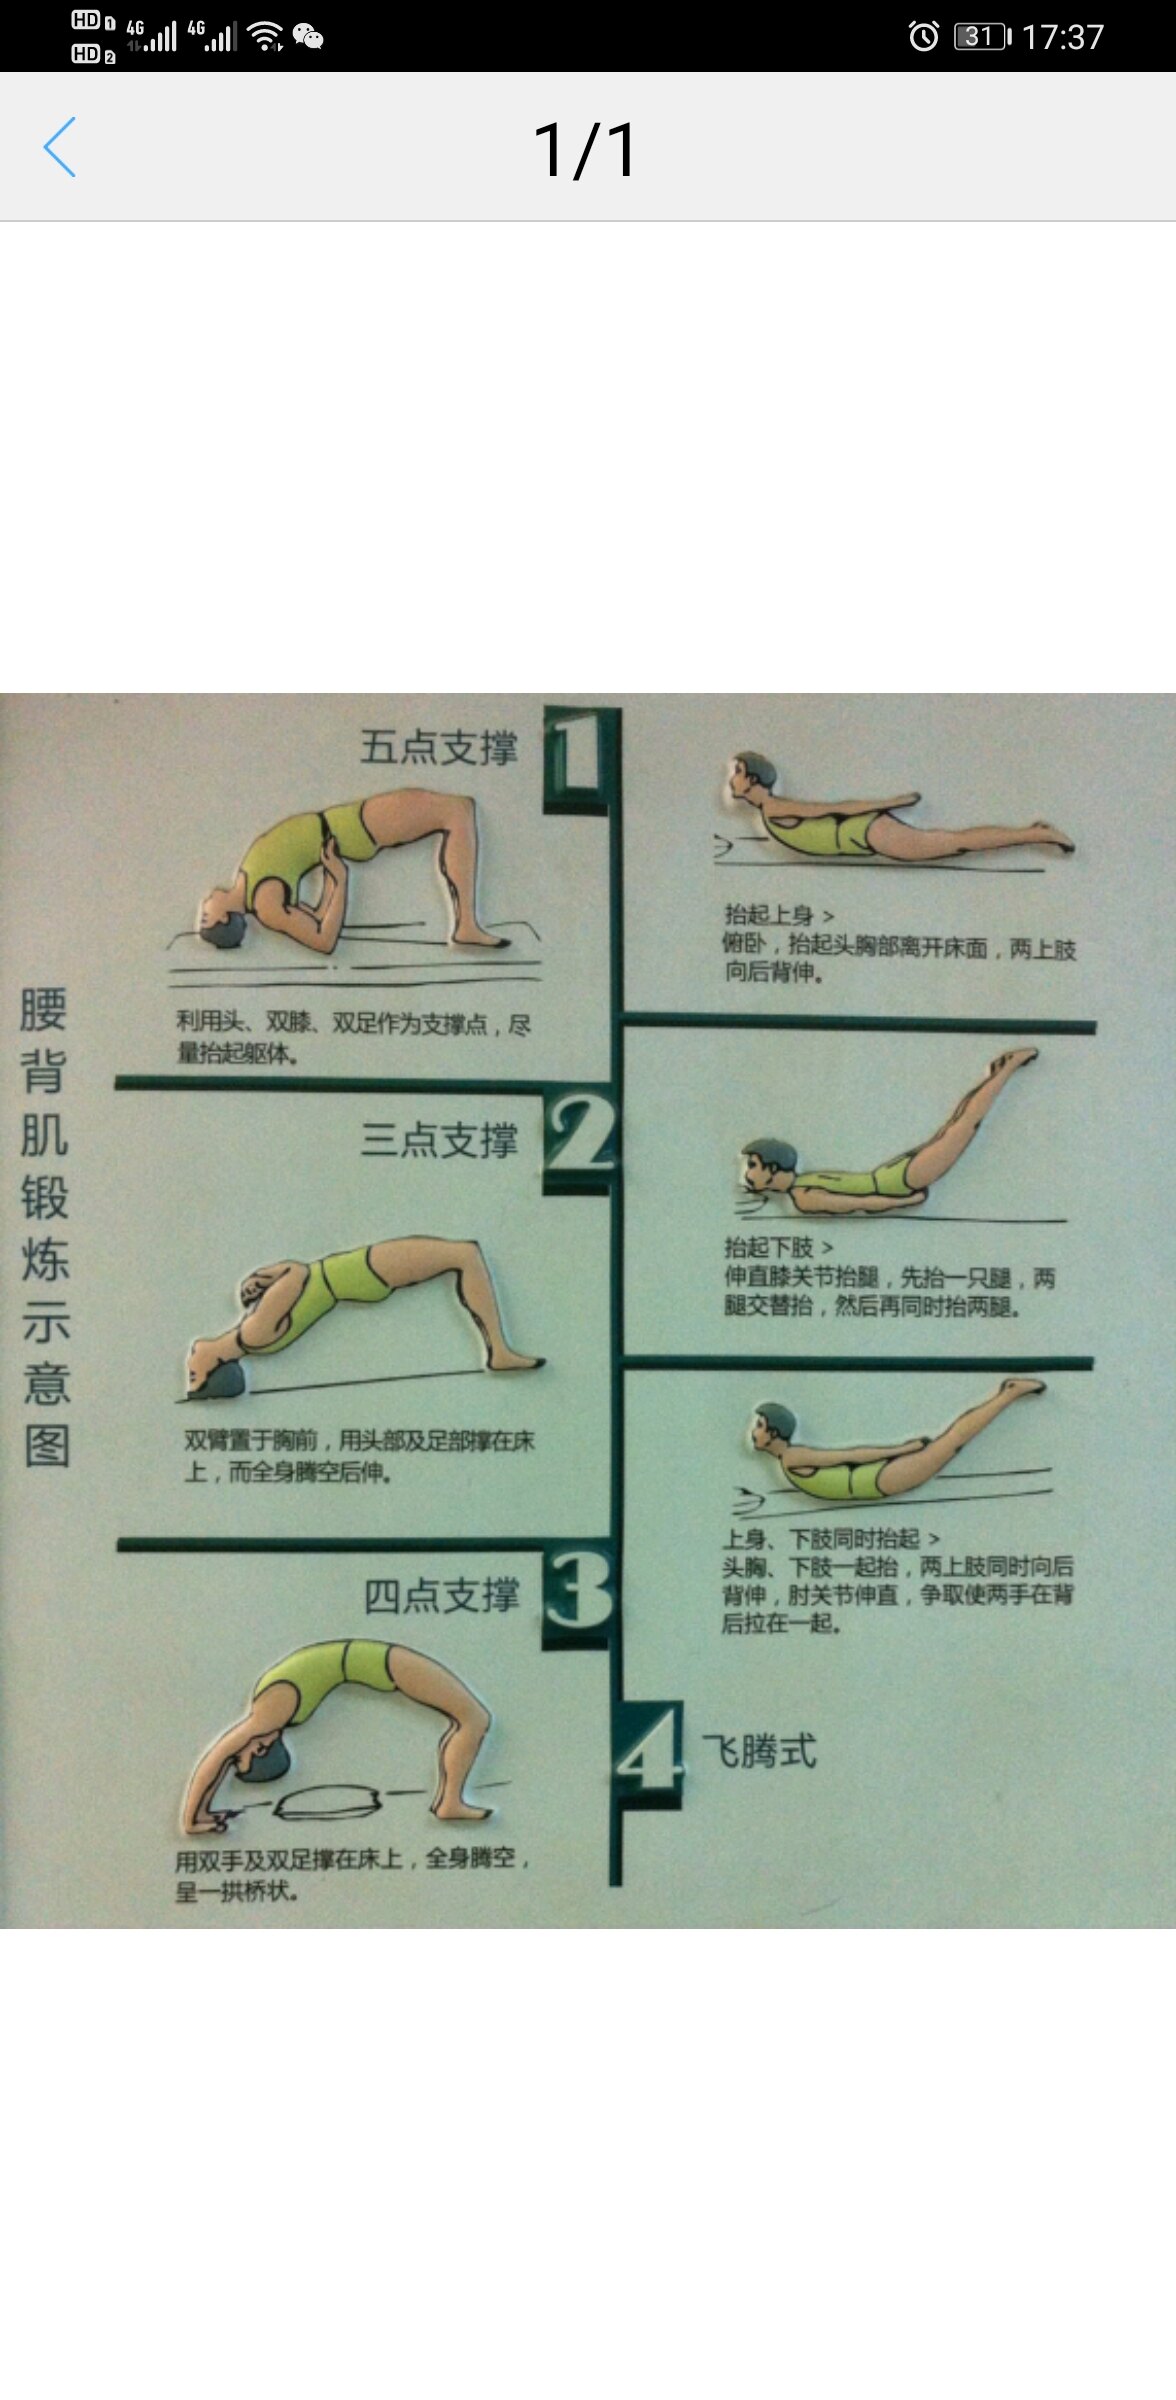 锻炼腰背肌的方法图片